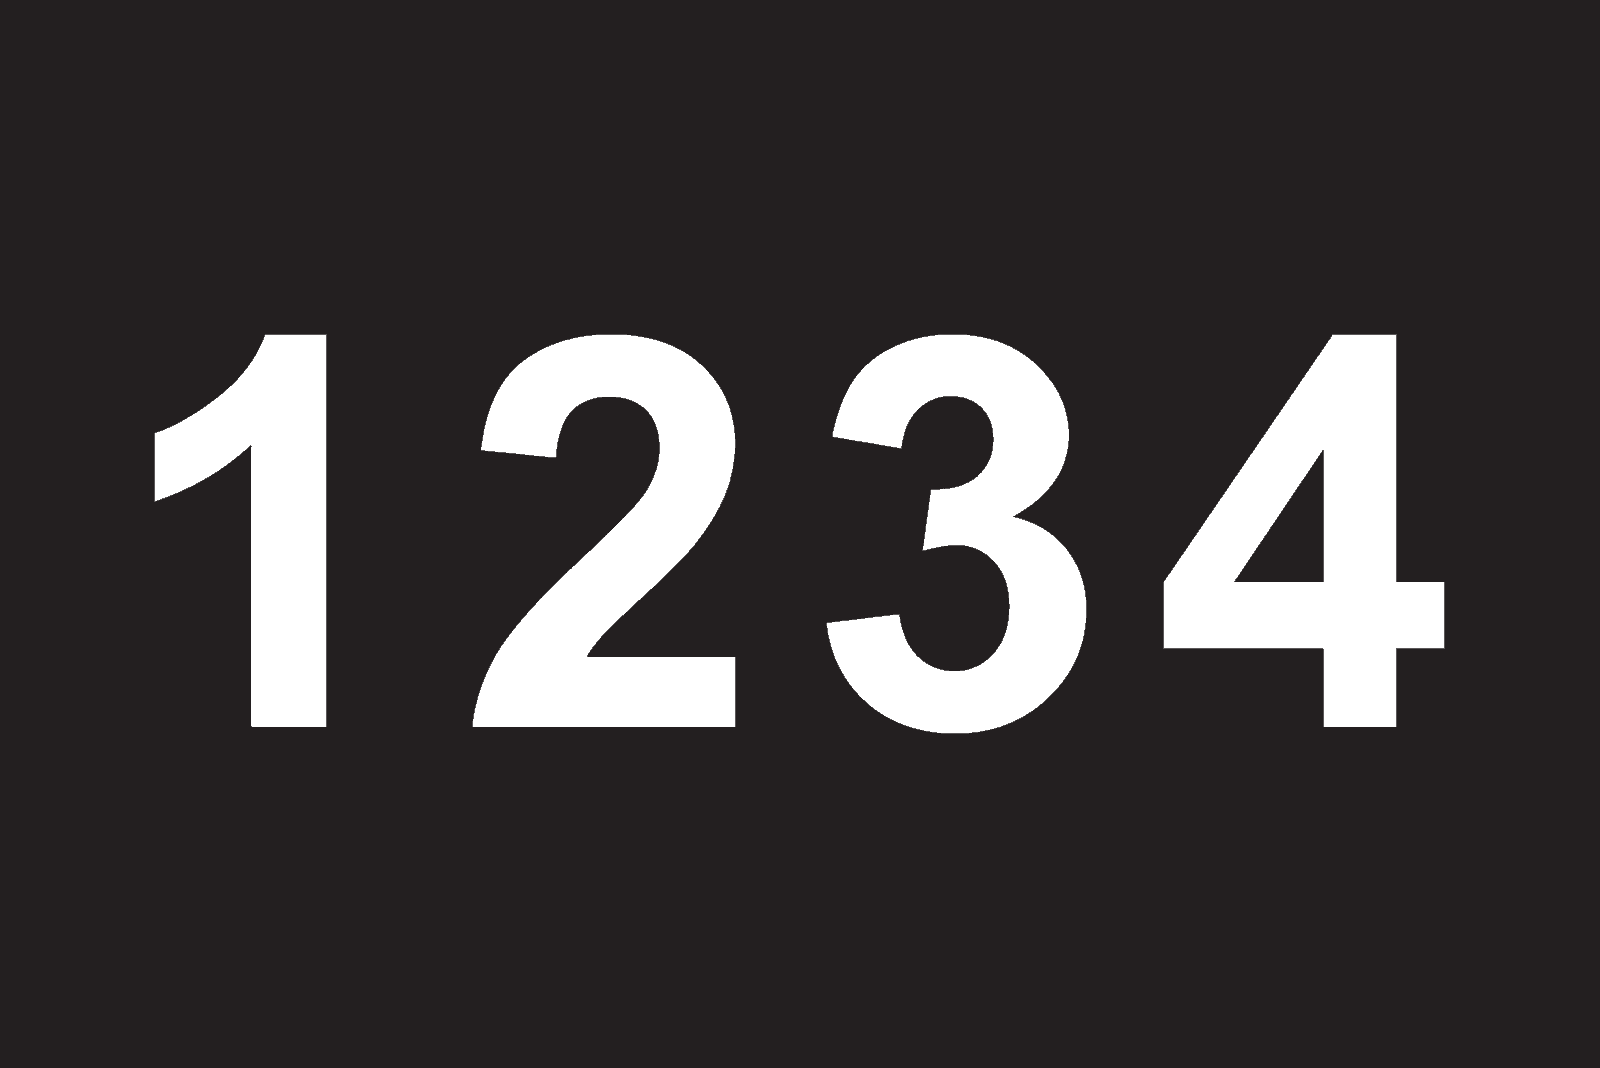 Nummer 1234 auf schwarzem Hintergrund